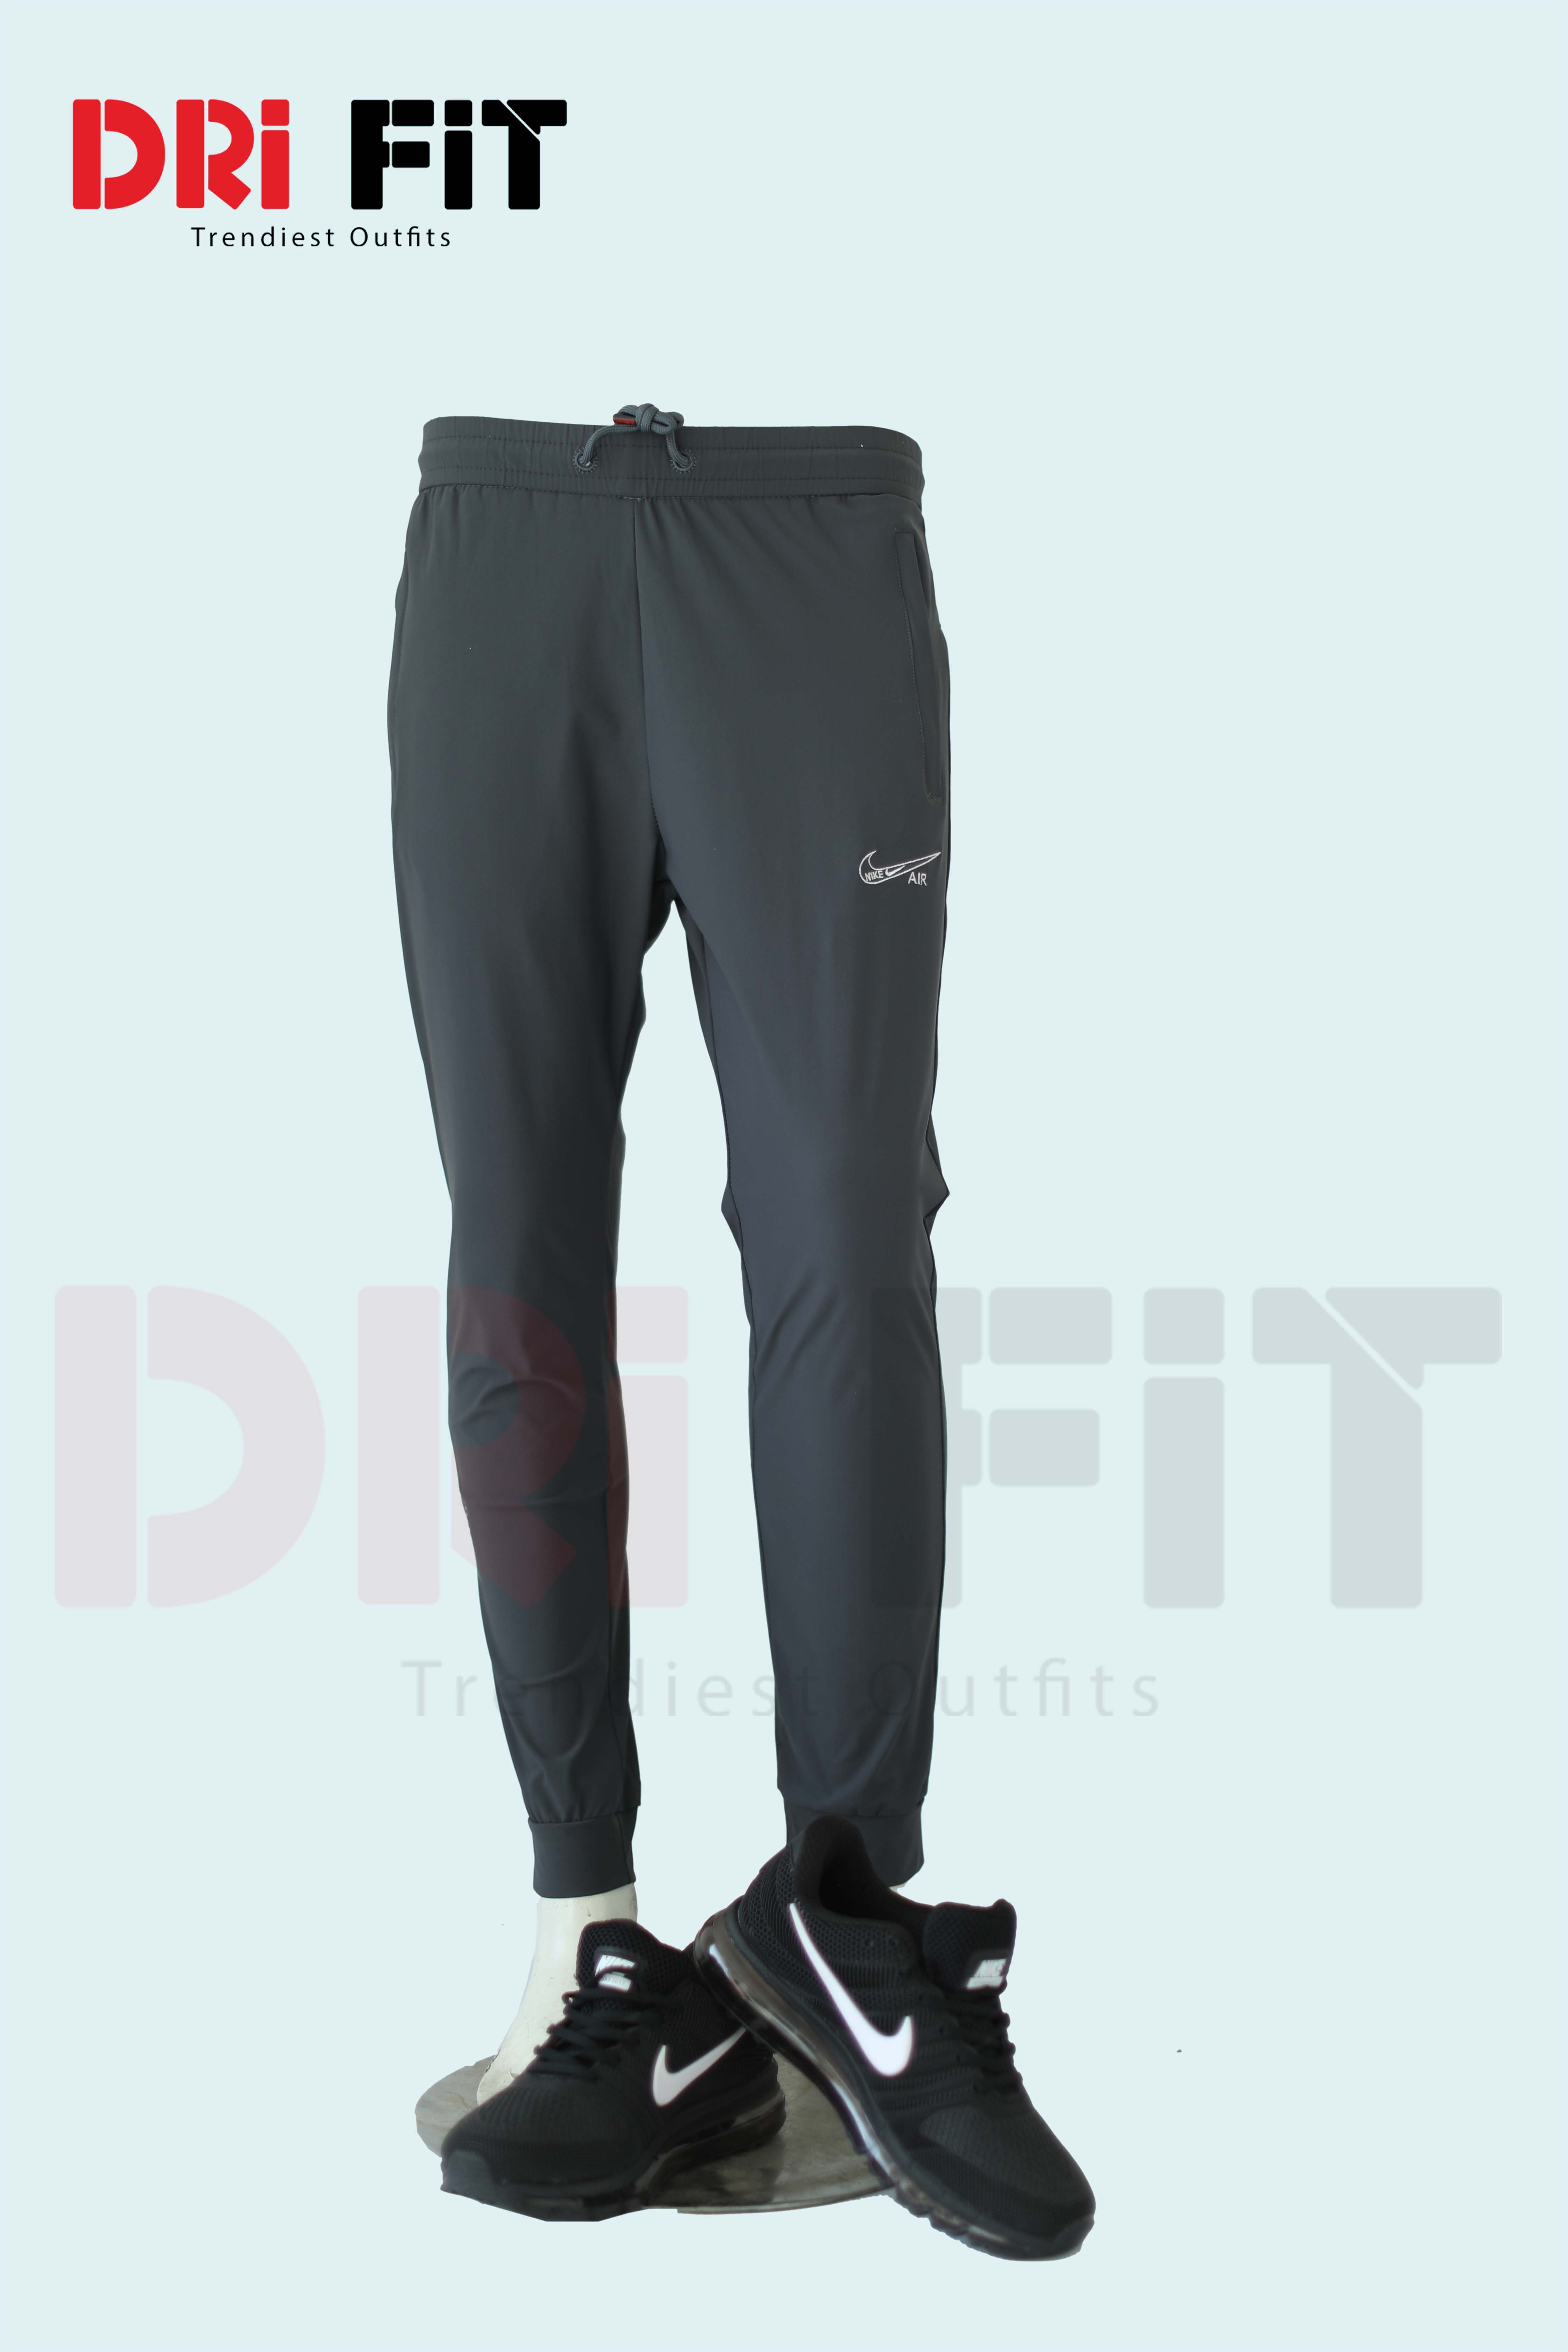 Nike Lightweight Trouser Sportswear Air Max |Dri Fit